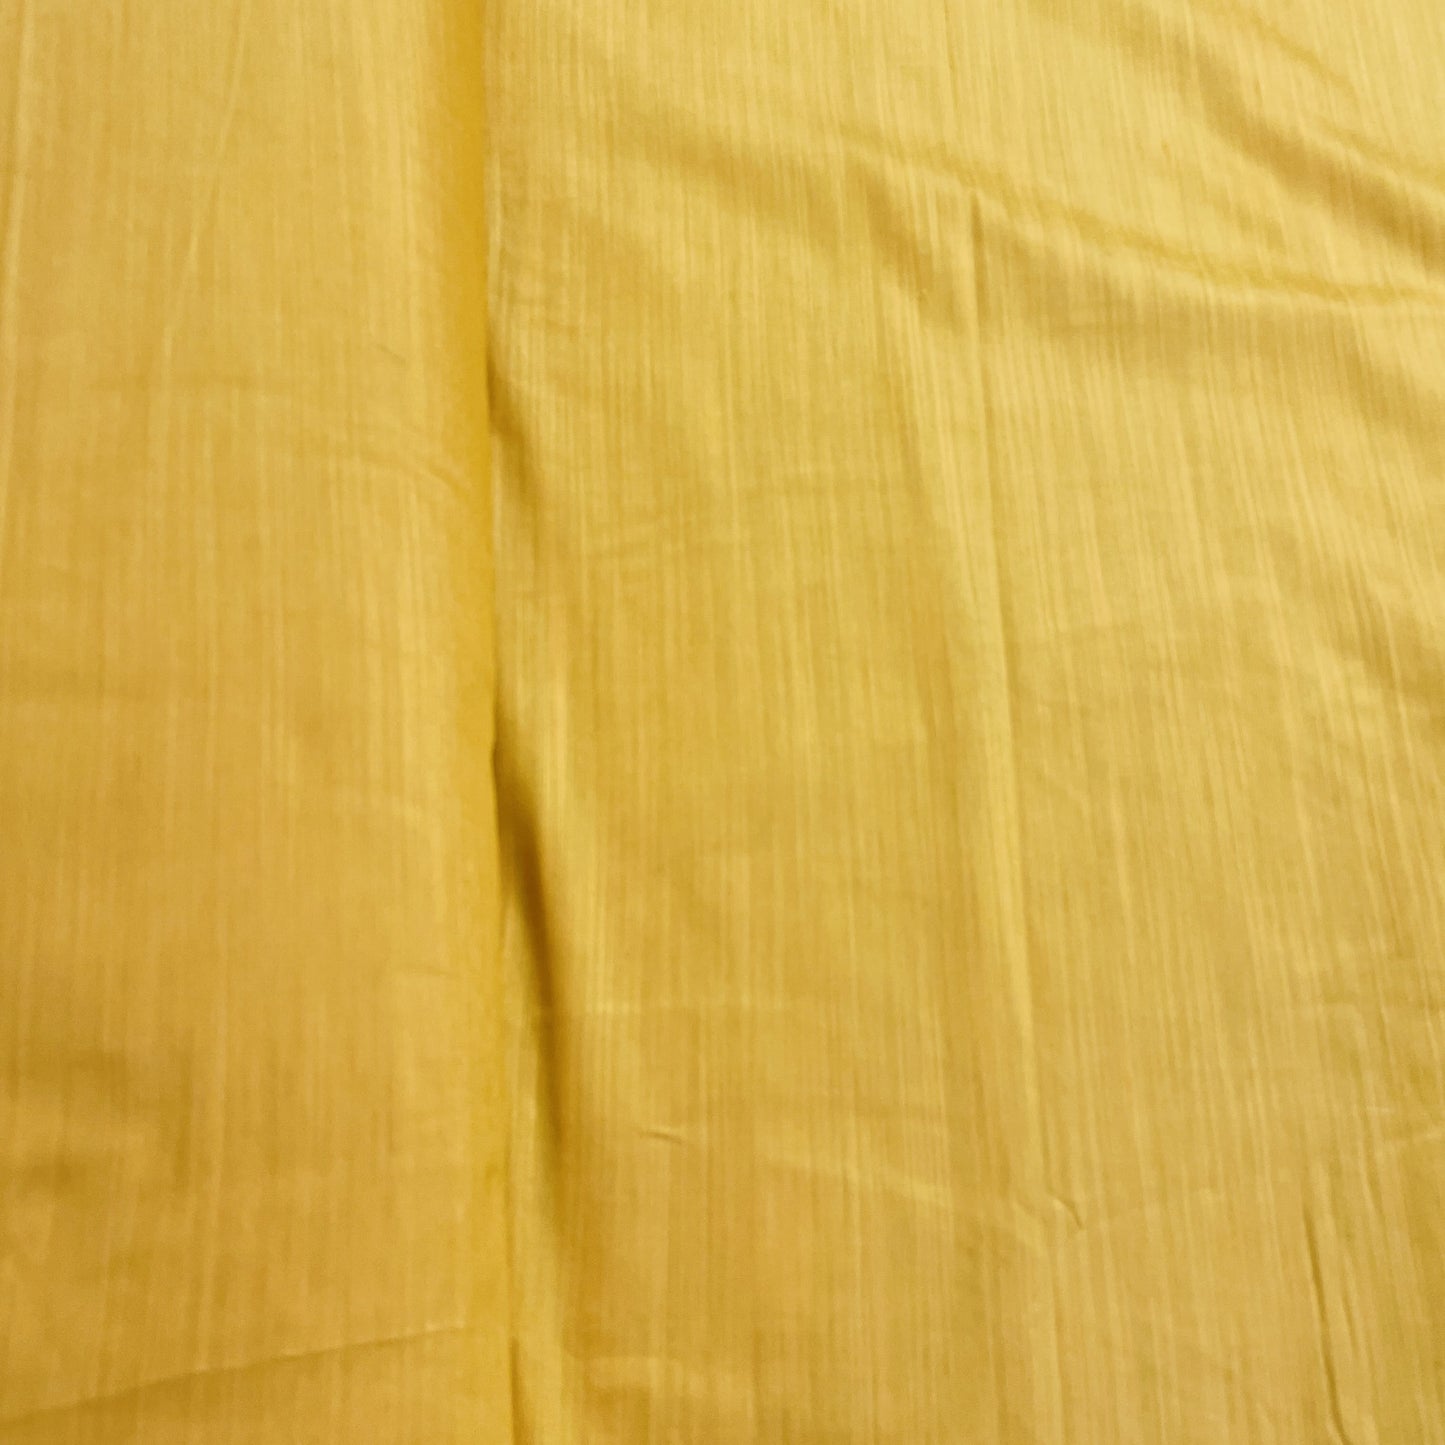 Yellow Solid Banarasi Cotton Slub Fabric